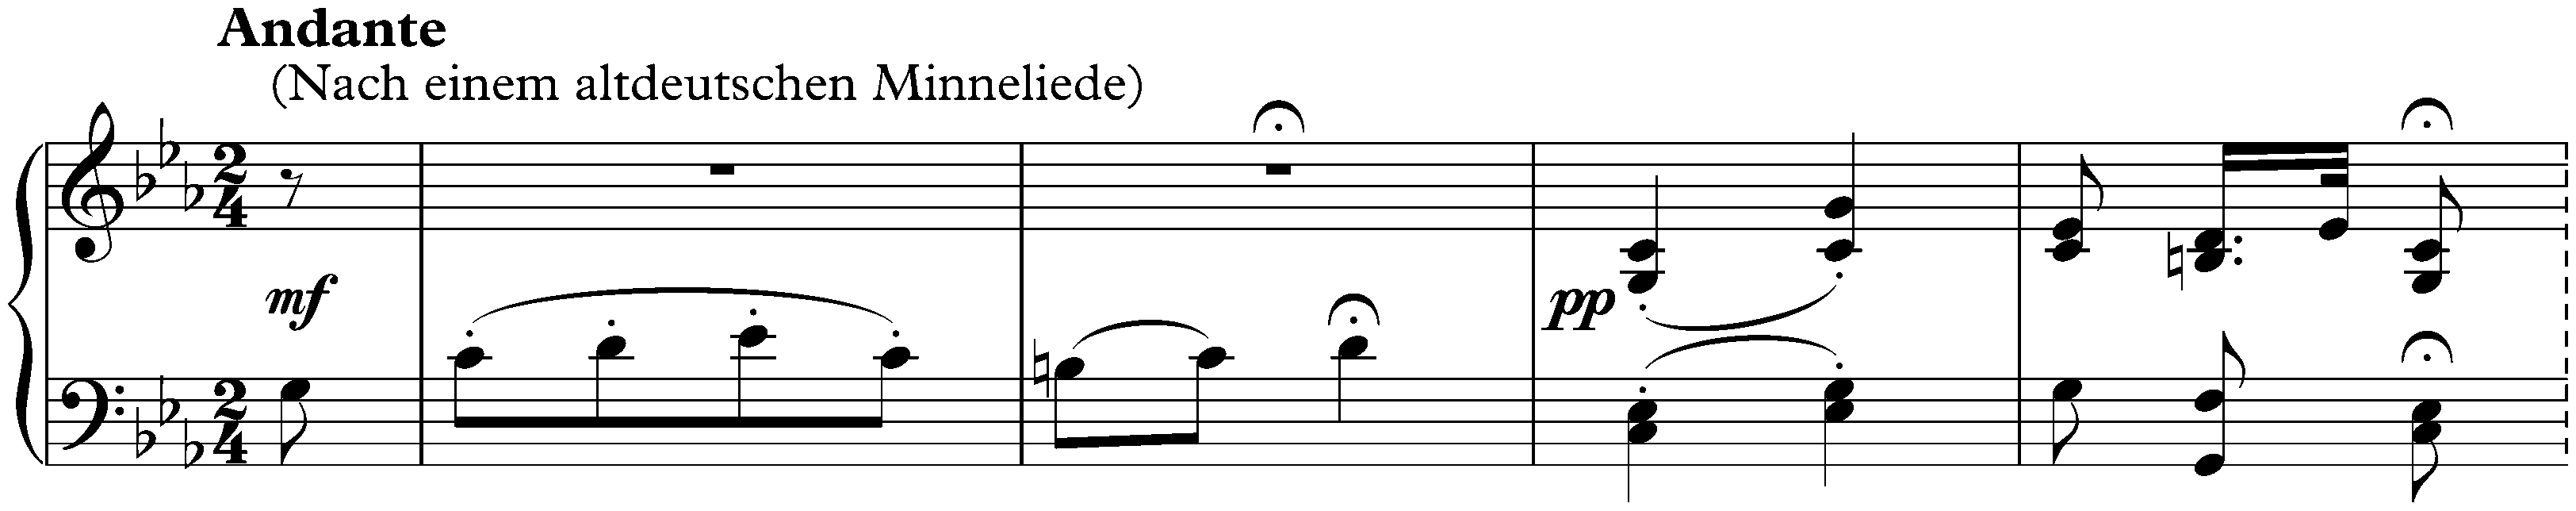 Sonata no. 1 in C major, op. 1; 2. Andante